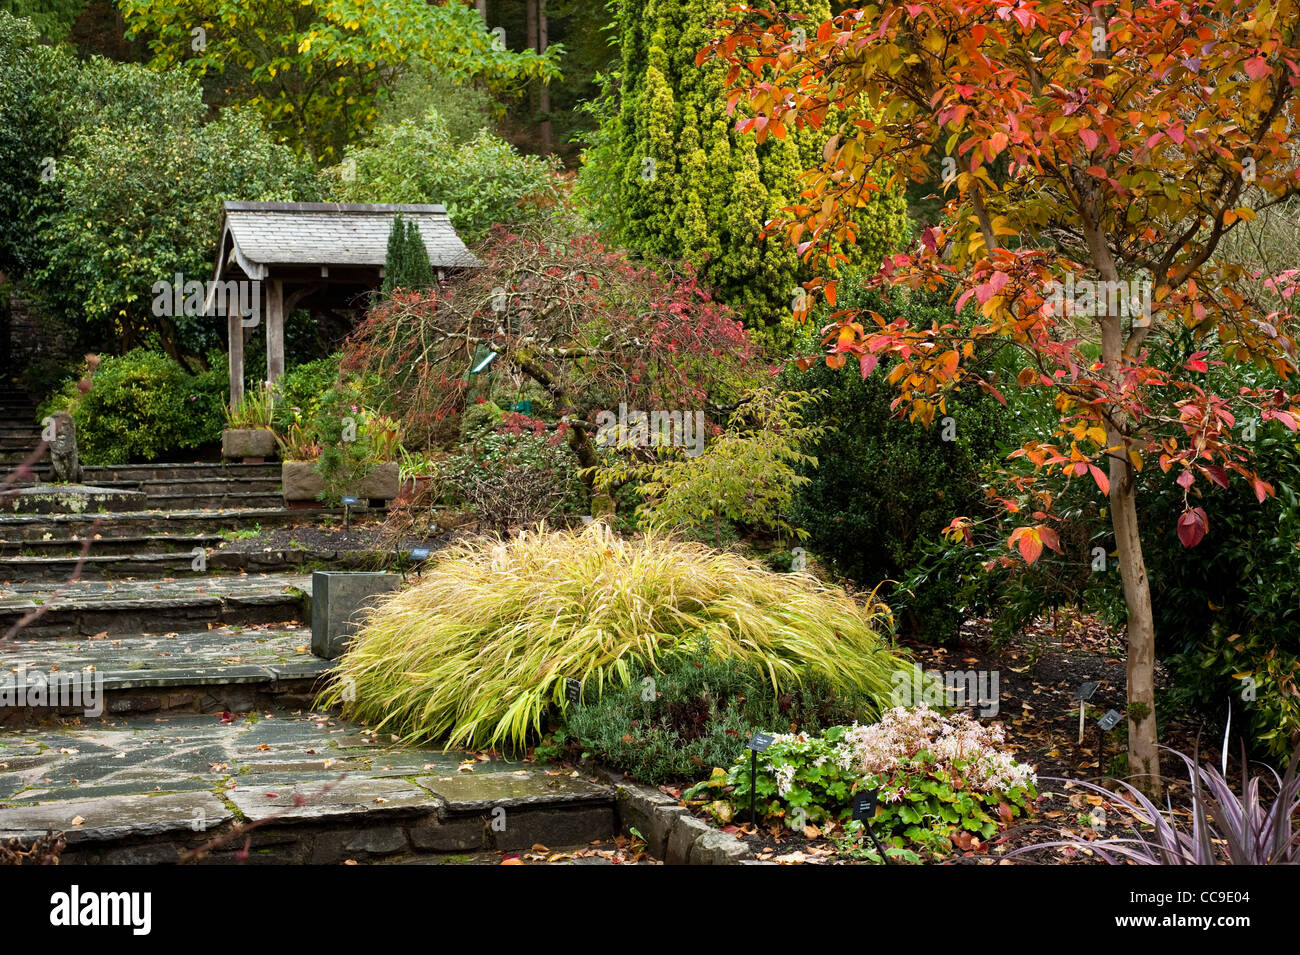 Le jardin de pierres en automne, RHS Rosemoor, Devon, Angleterre, Royaume-Uni Banque D'Images